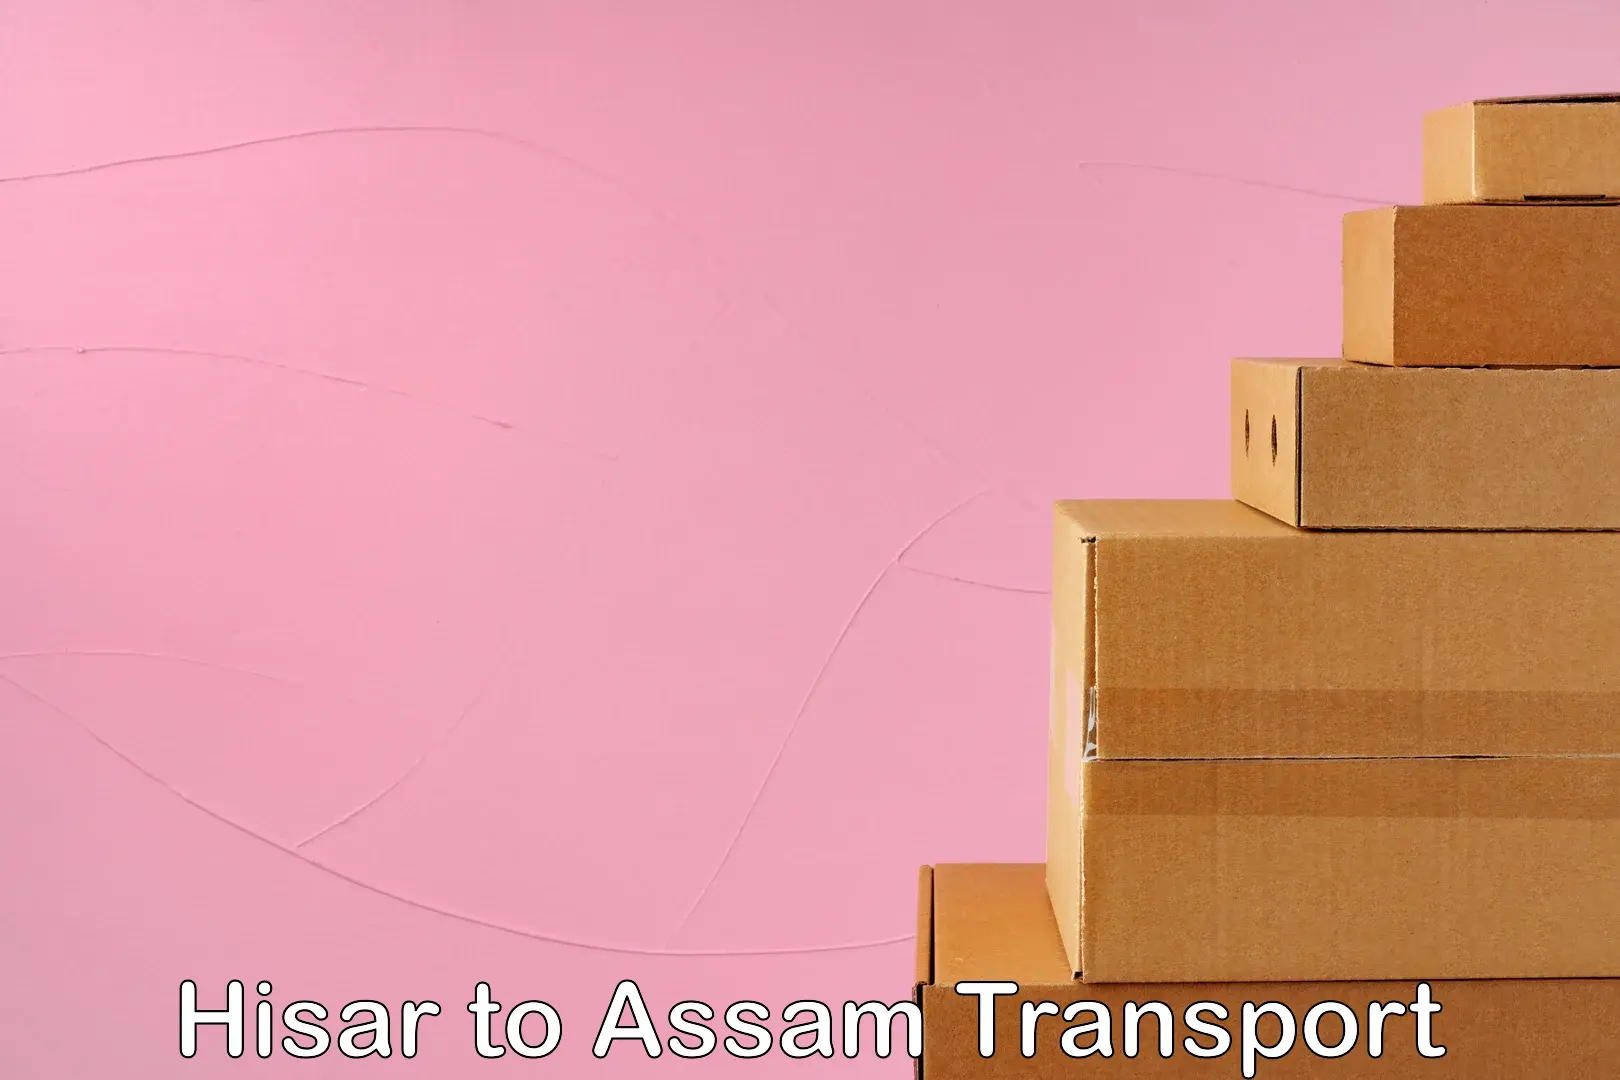 International cargo transportation services Hisar to Assam